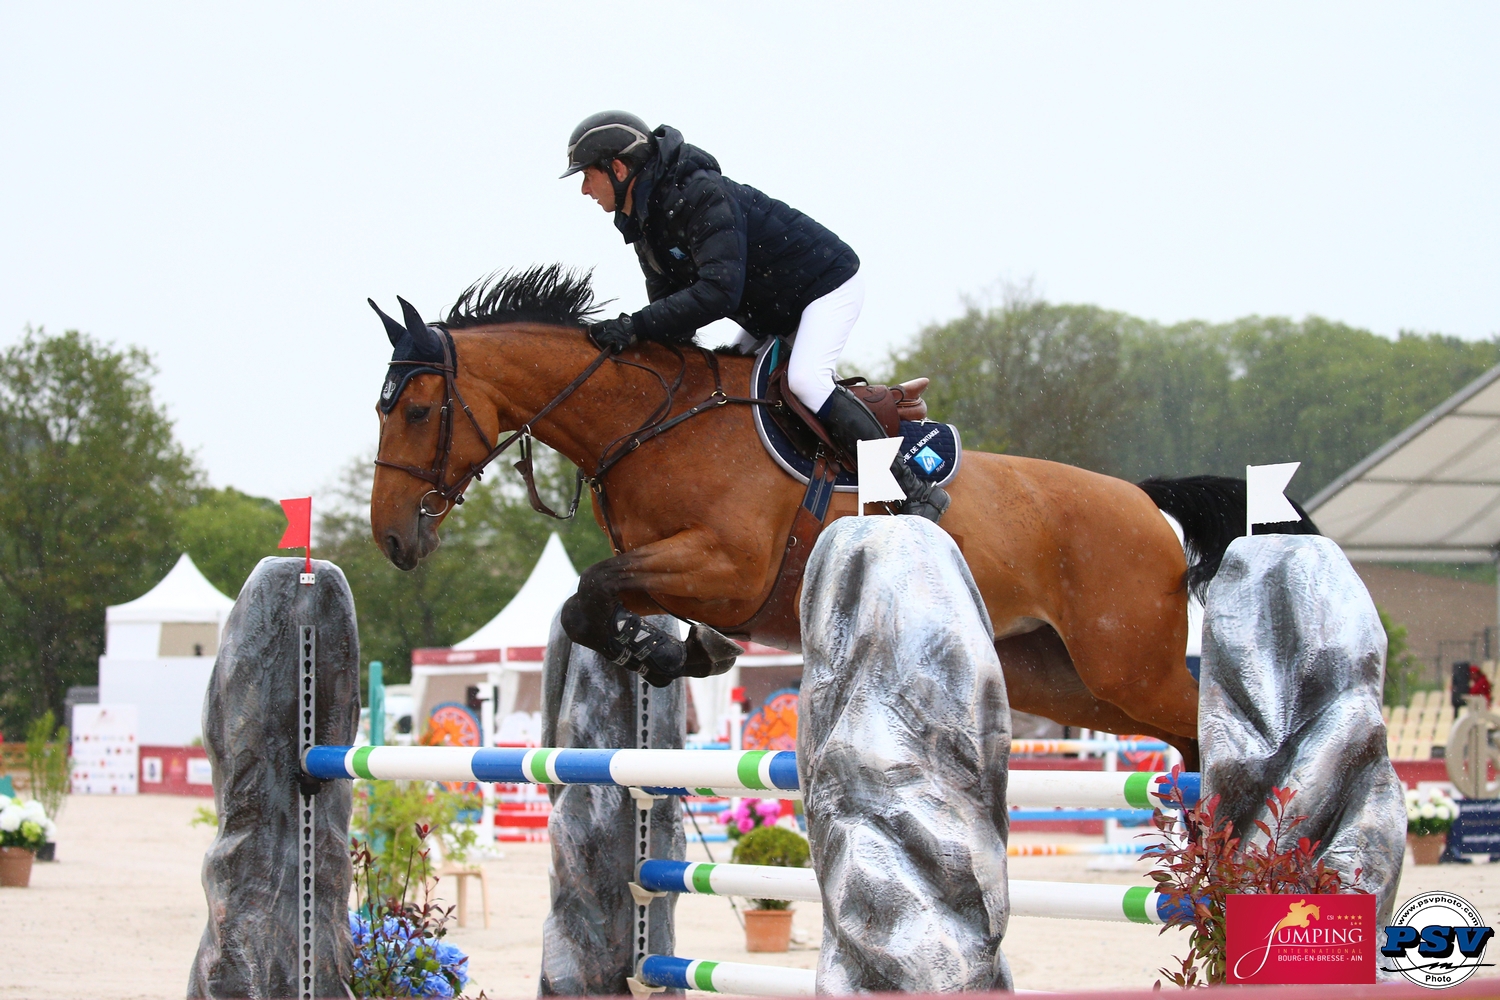 Epona de Ponthual a été classée deuxième dans deux épreuves réservées aux chevaux de sept ans disputées à Bourg-en-Bresse